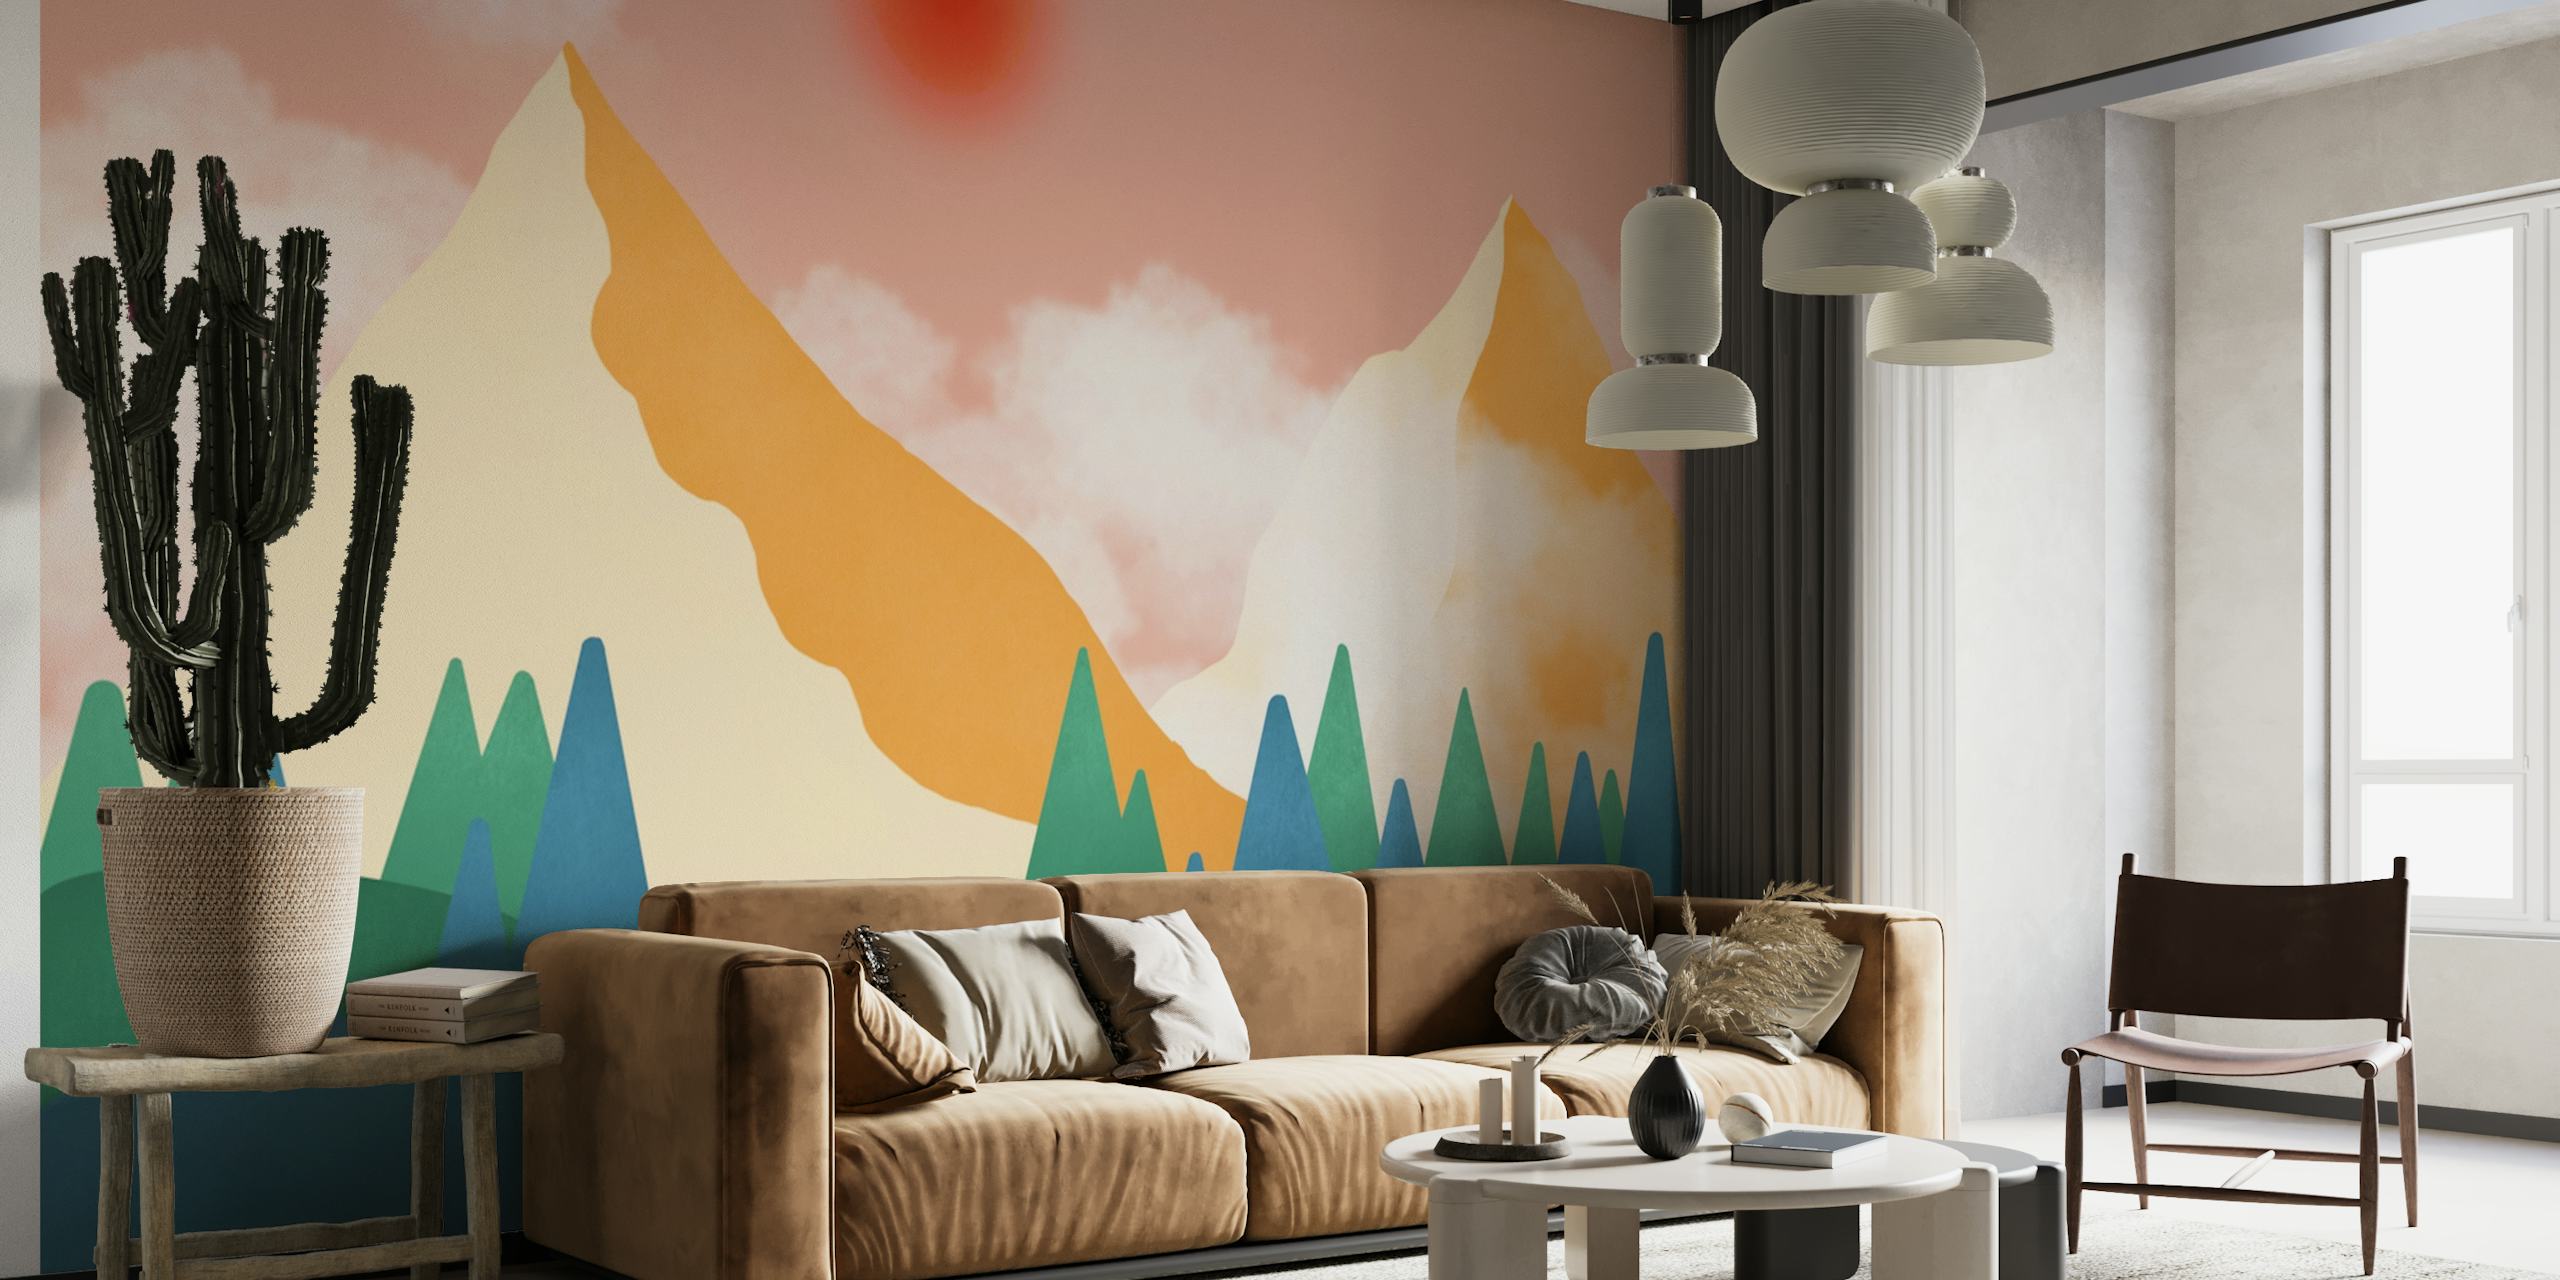 The Orange Mountains wallpaper